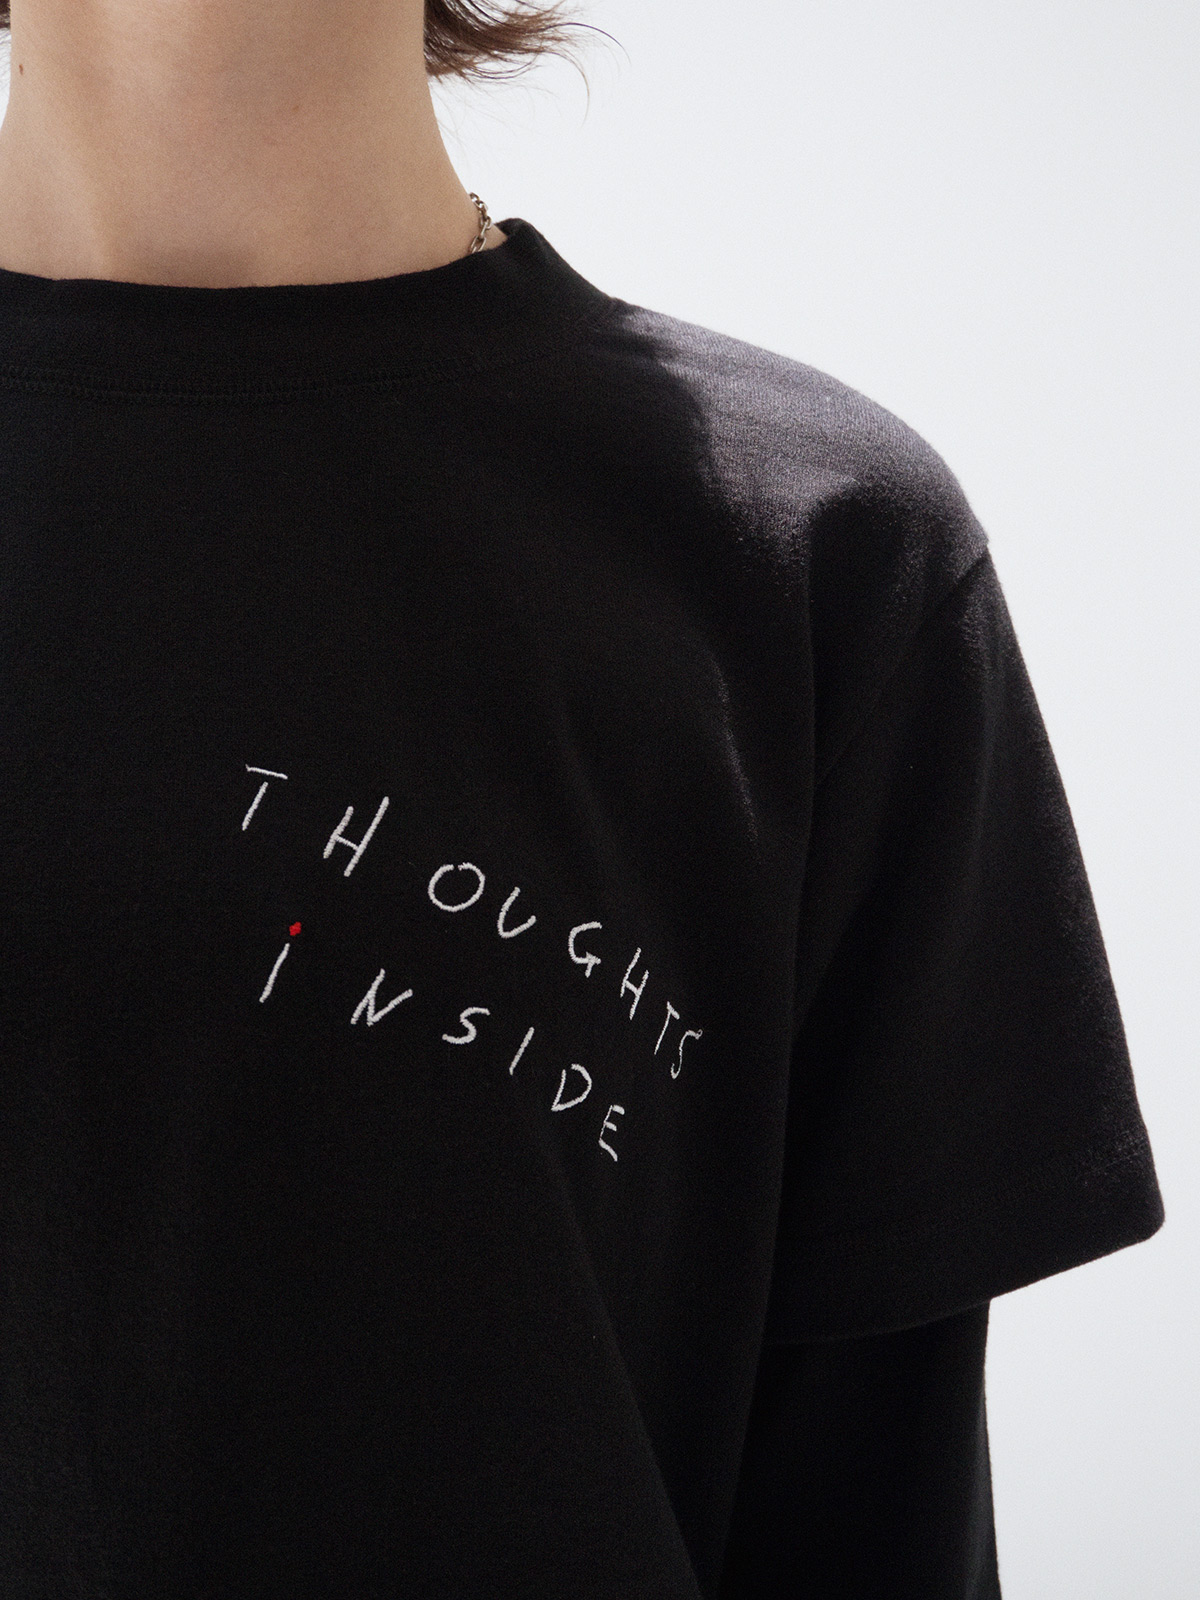 流行のアイテム 2019AW SODUK 'THOUGHTS レイヤードTシャツ INSIDE' Tシャツ/カットソー(七分/長袖)